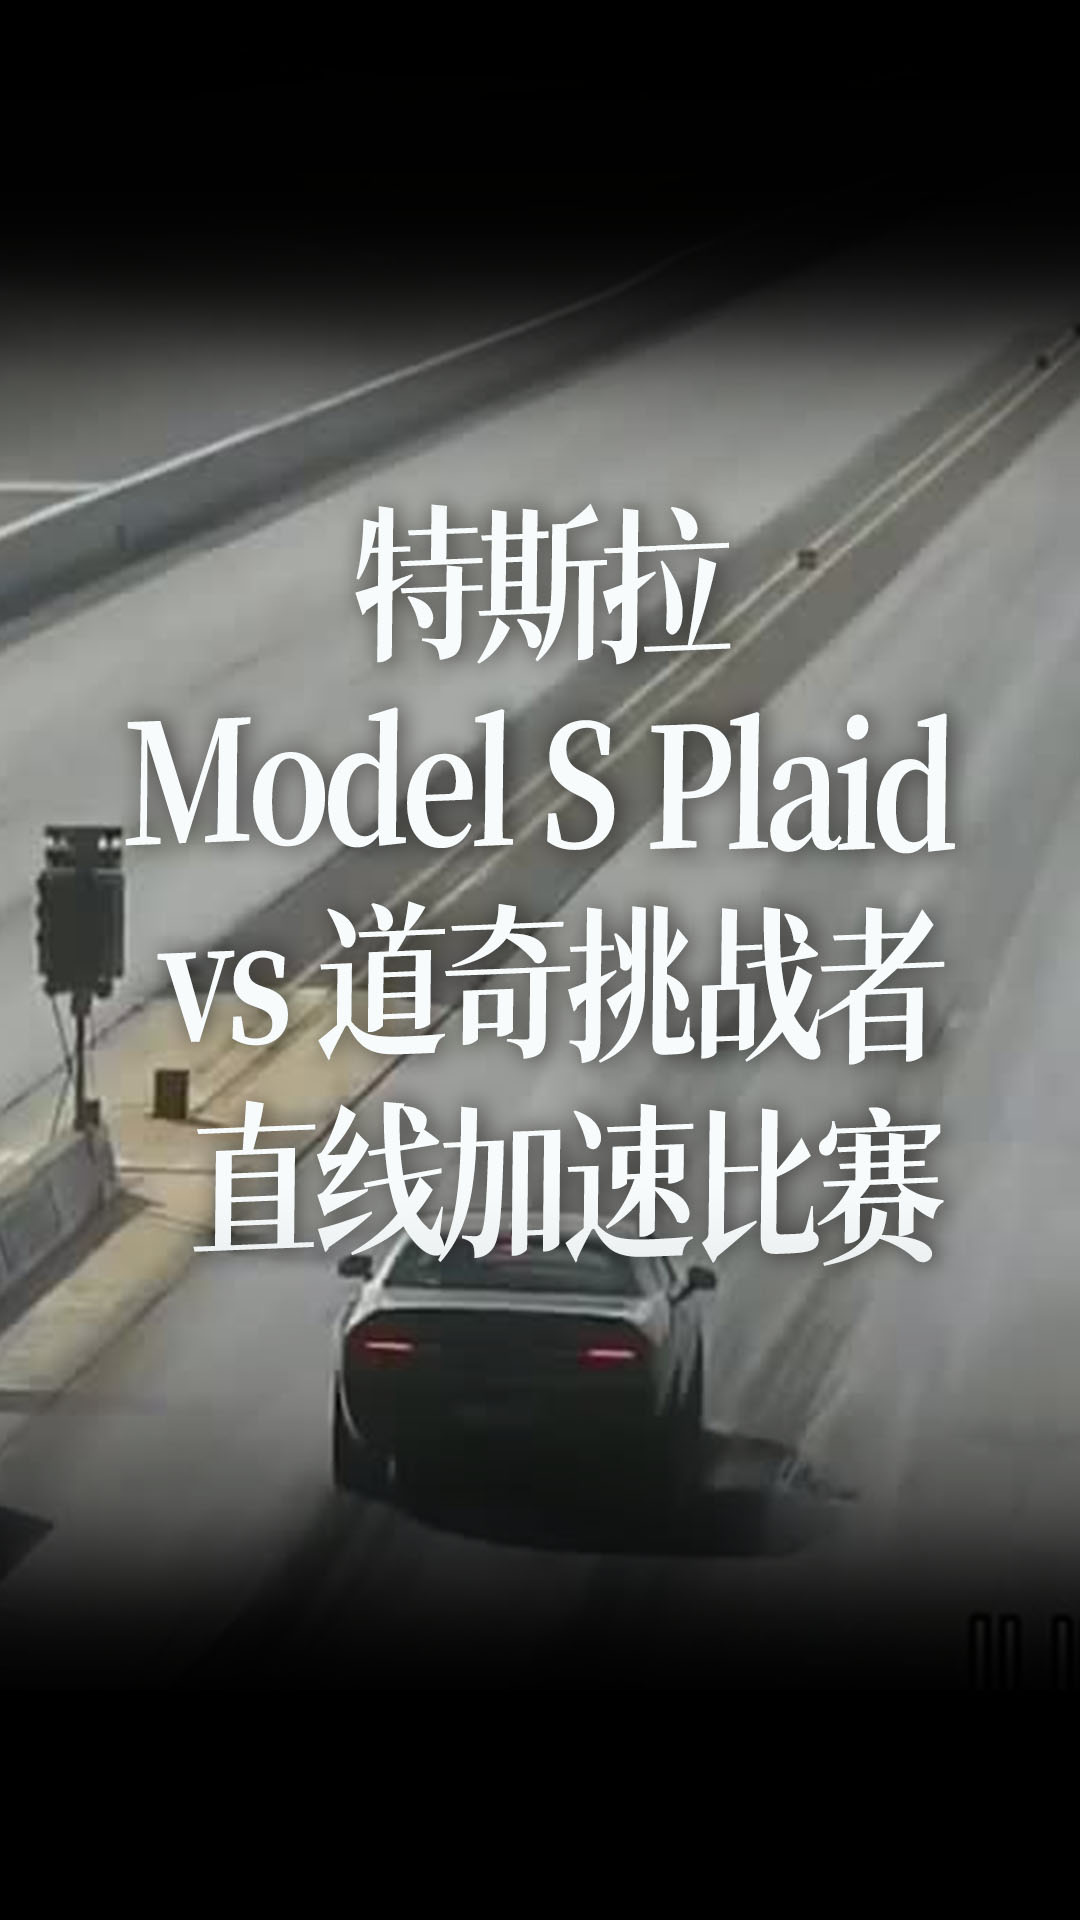 特斯拉 Model S Plaid vs 道奇挑战者  14英里直线加速比赛